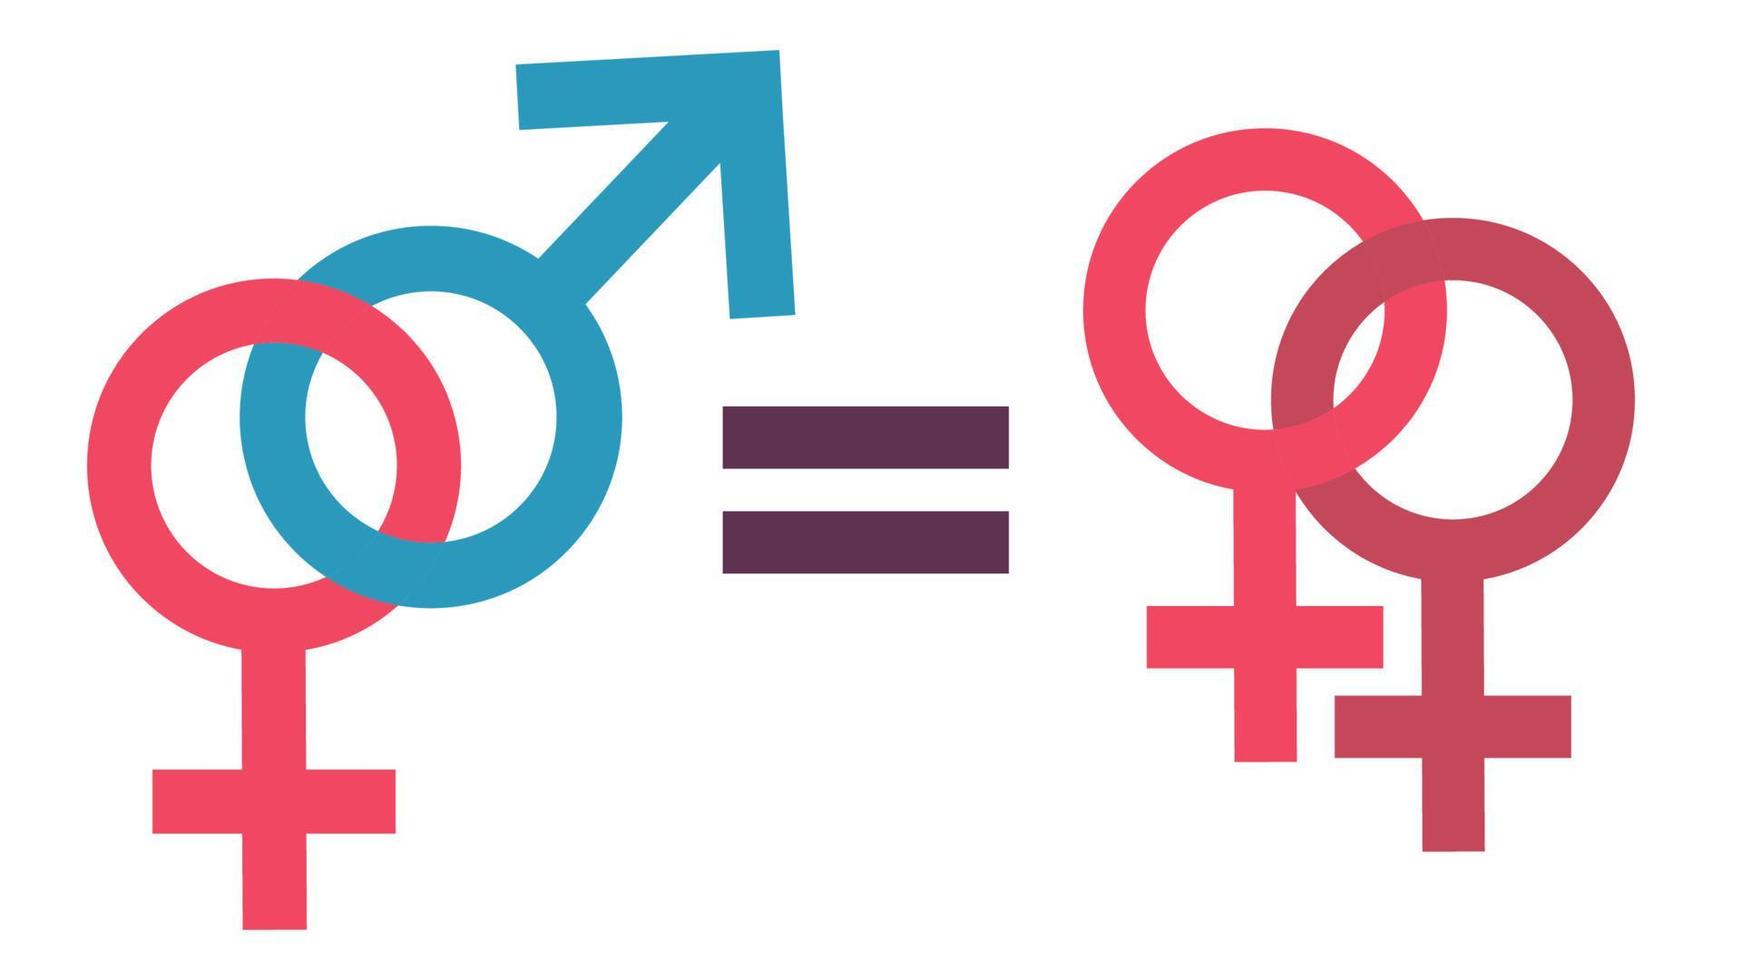 o conceito de igualdade entre homens e mulheres. igualdade da família lésbica e relacionamentos tradicionais. conceito de direitos iguais. igualdade de gênero. vetor